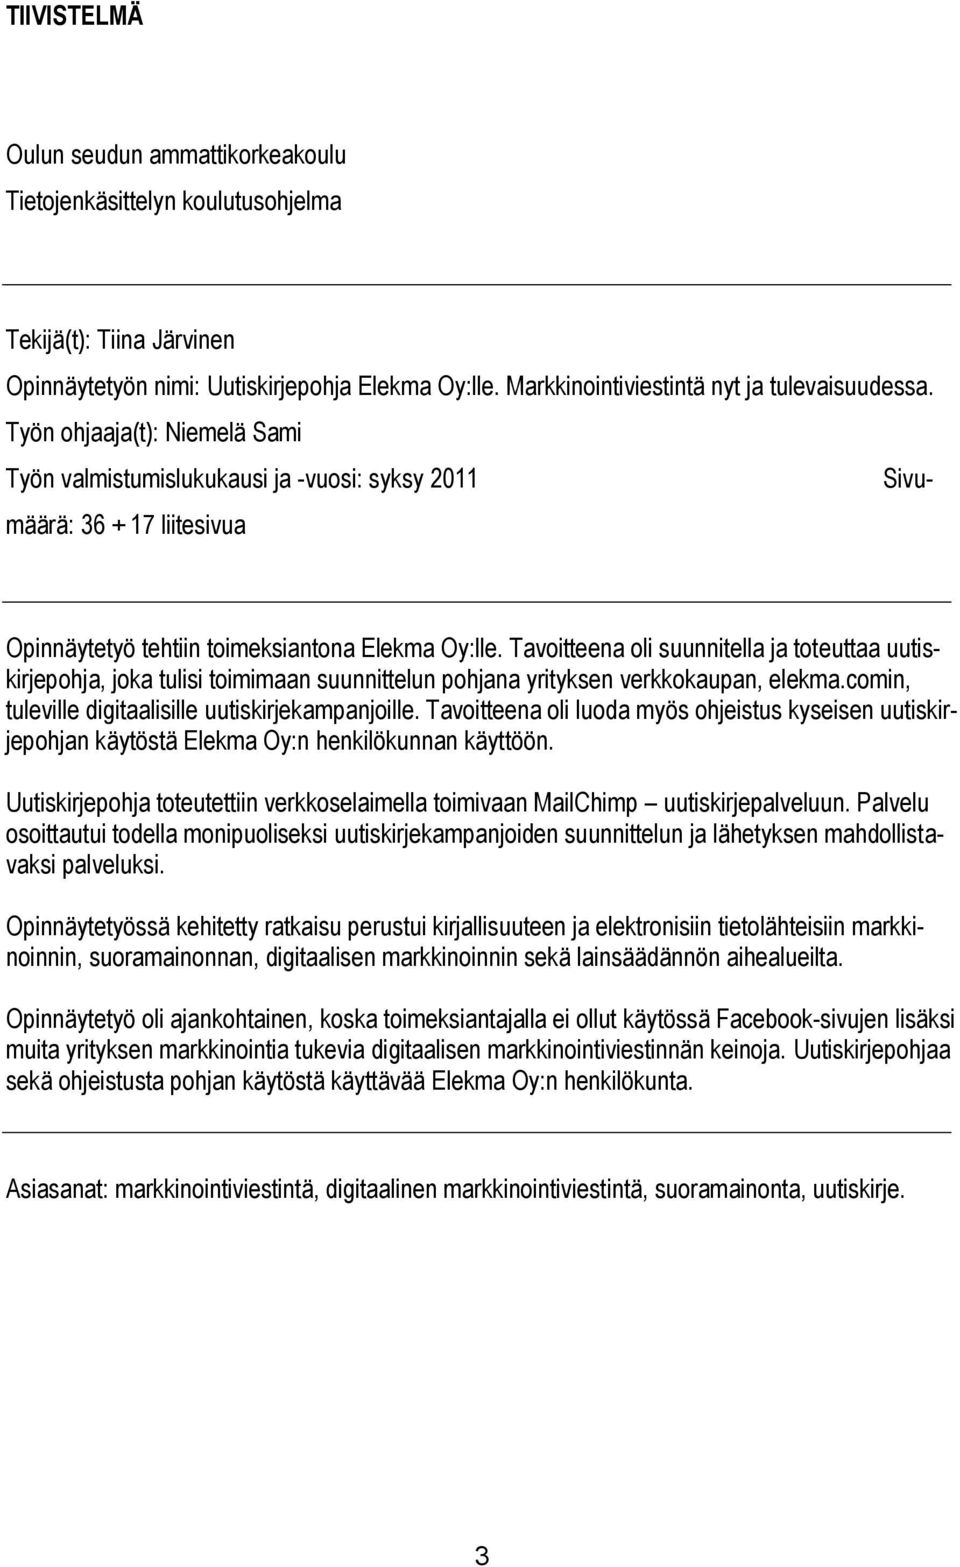 Työn ohjaaja(t): Niemelä Sami Työn valmistumislukukausi ja -vuosi: syksy 2011 Sivumäärä: 36 + 17 liitesivua Opinnäytetyö tehtiin toimeksiantona Elekma Oy:lle.